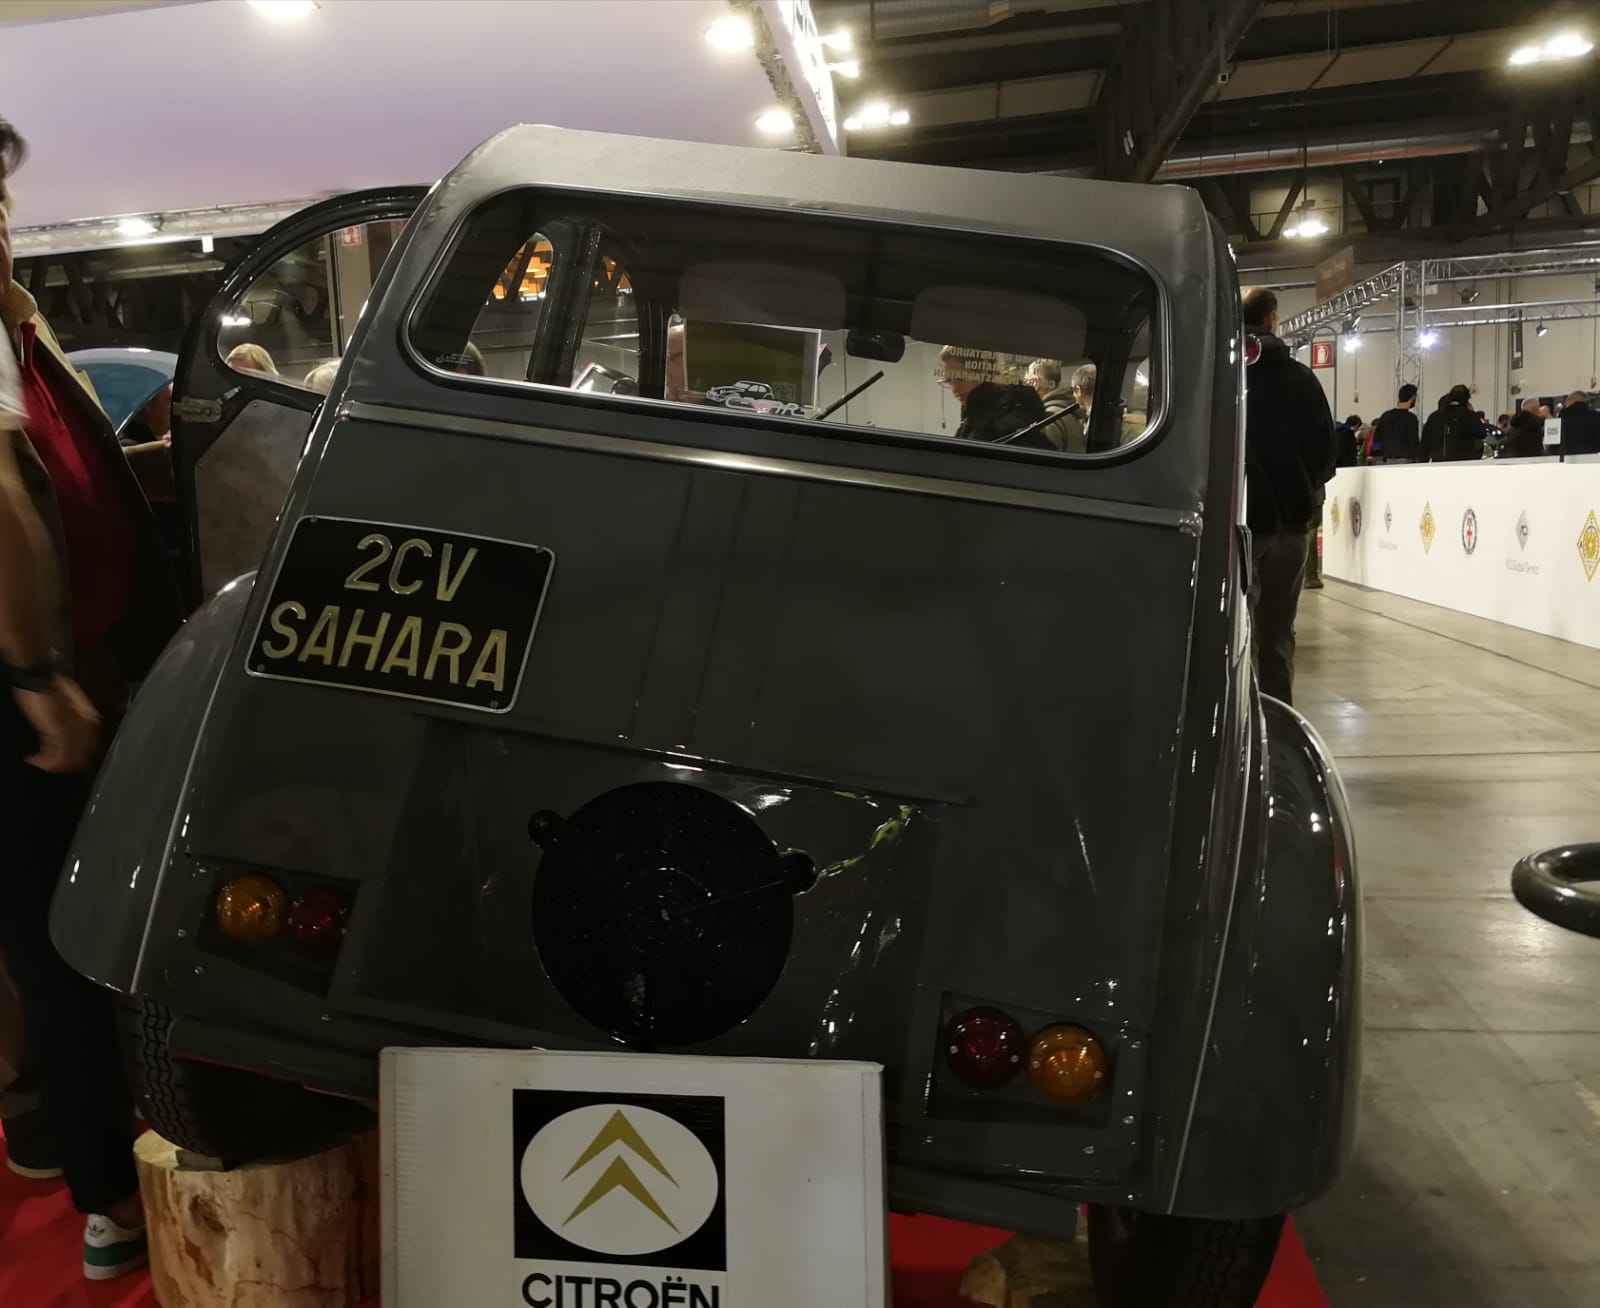 Citroen 2CV Sahara autoclassica milano 2019